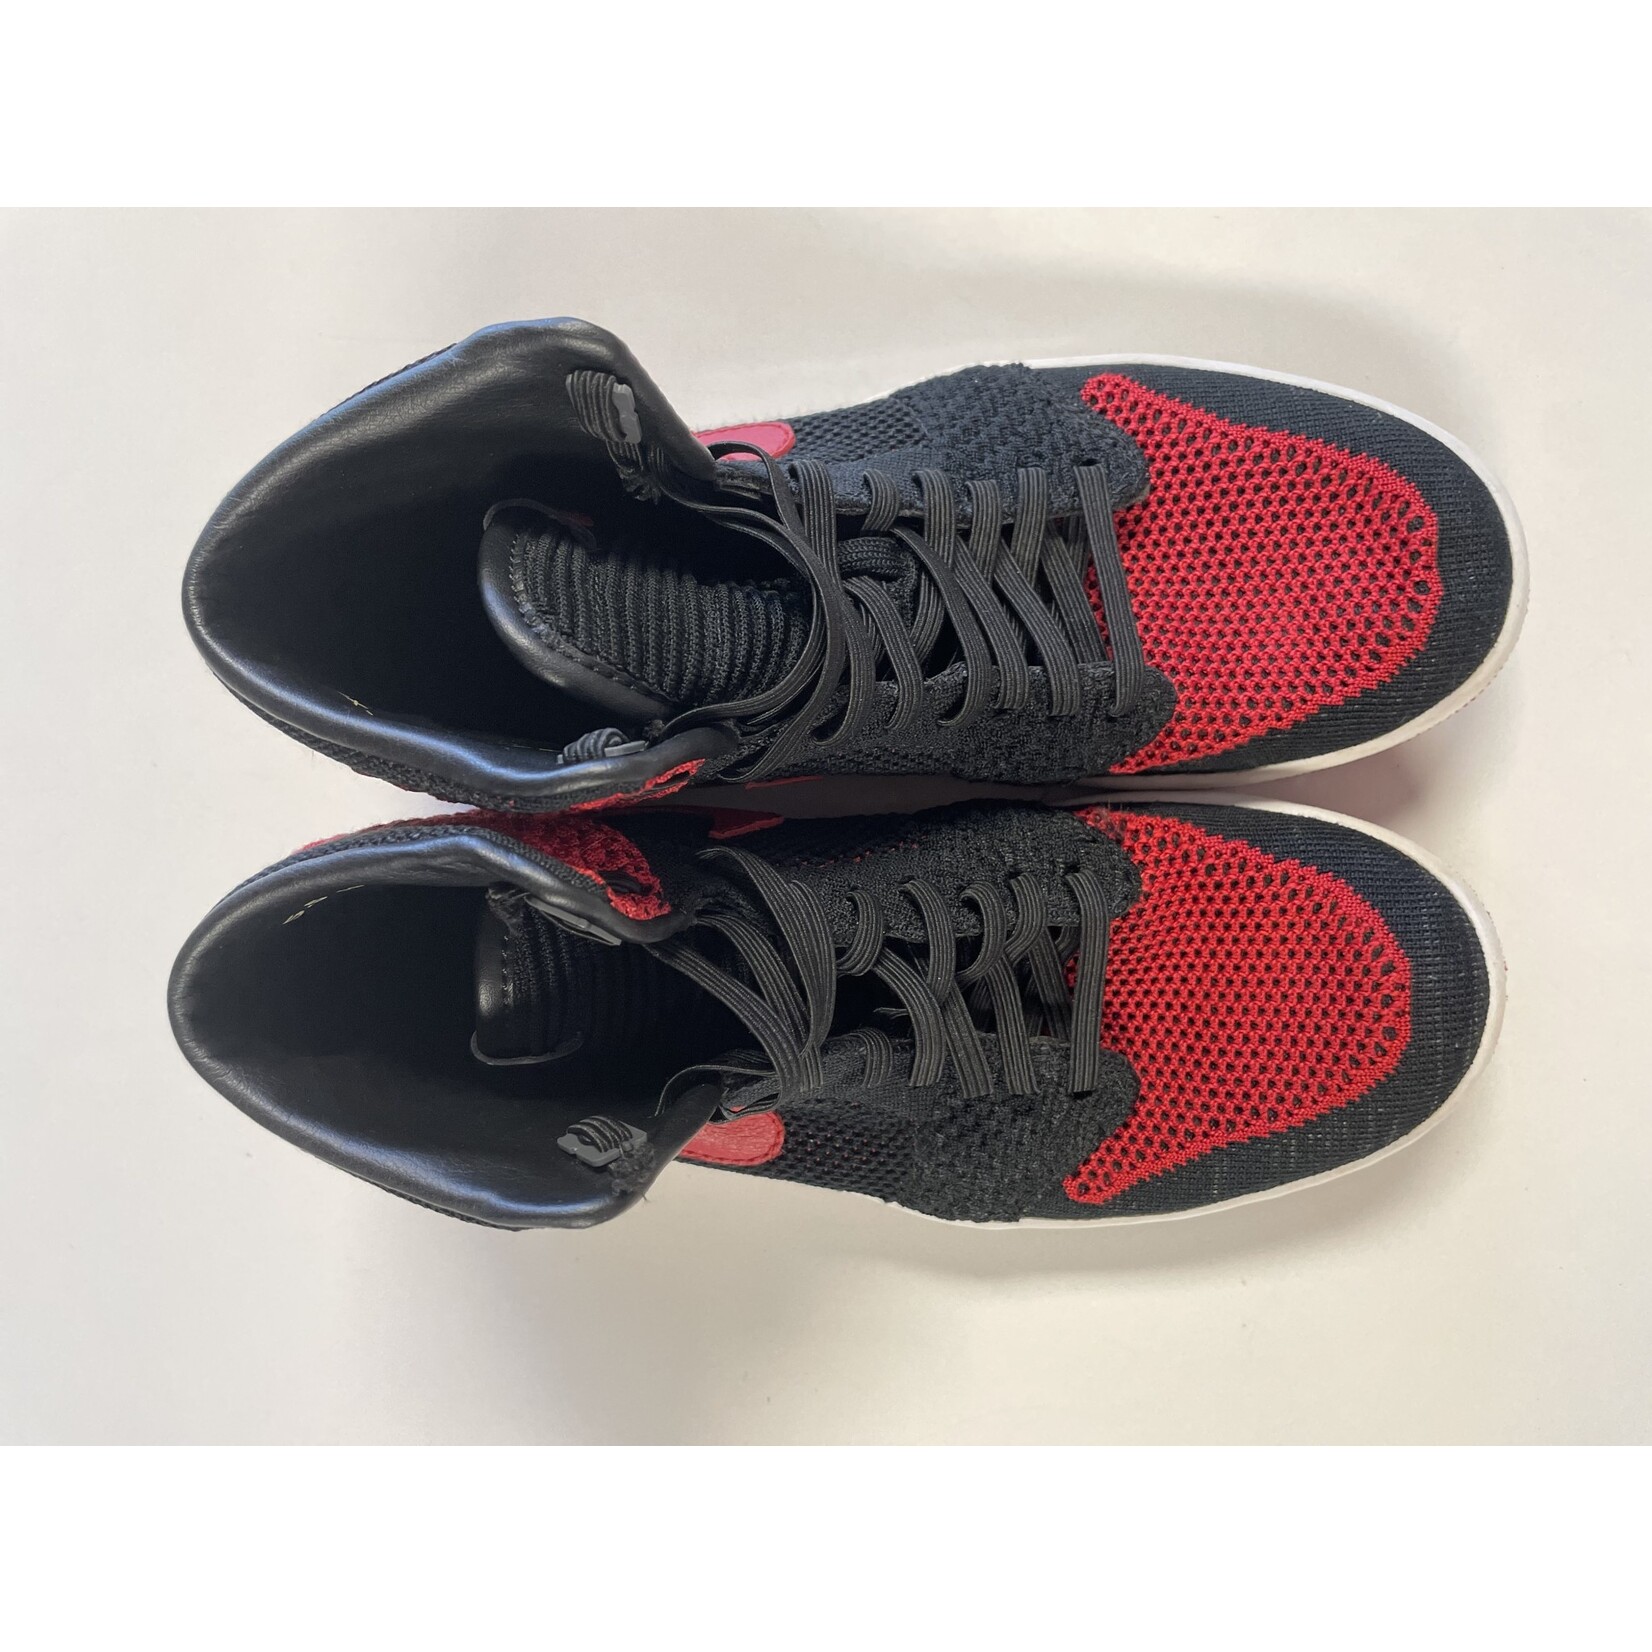 Nike, Jordan 1, Flyknit, Red, Black, 5.5 Youth